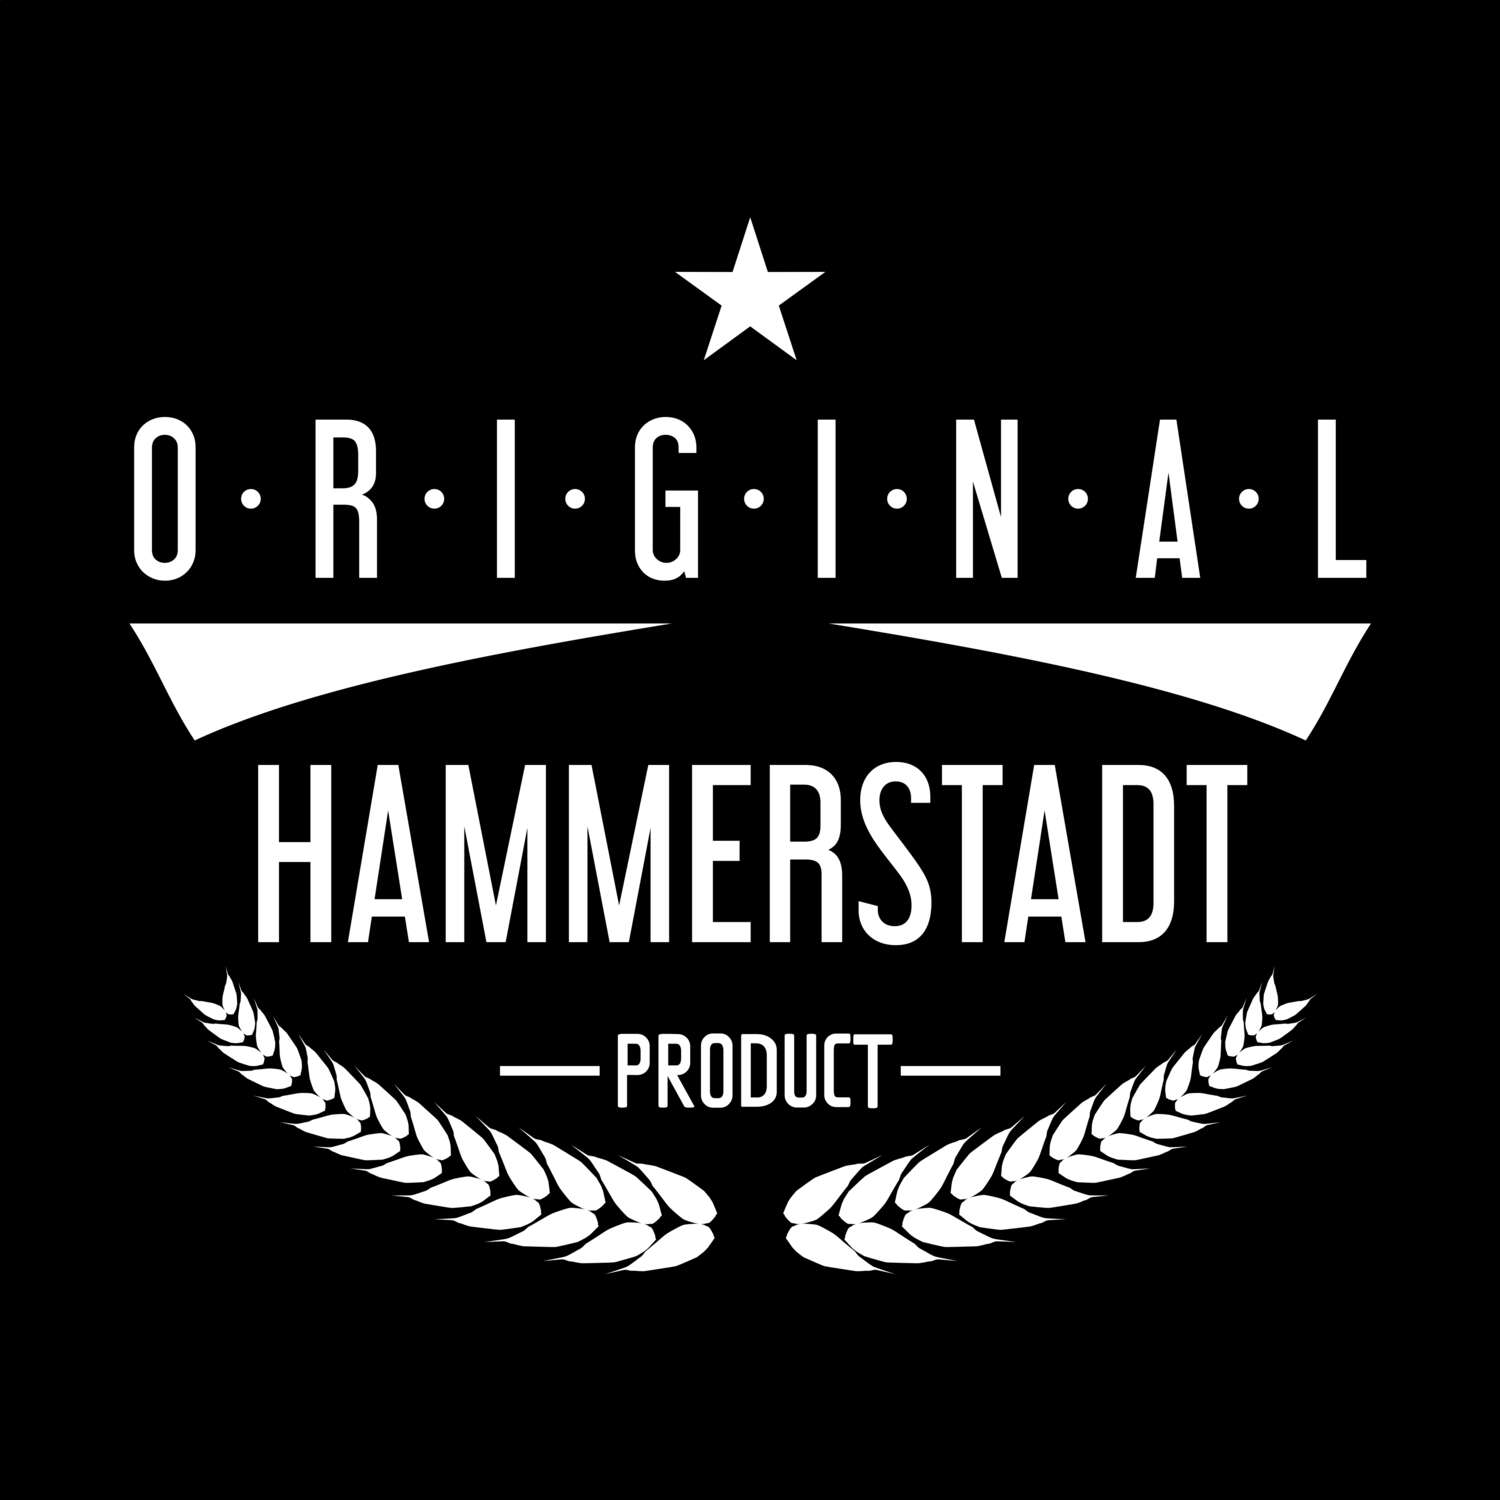 Hammerstadt T-Shirt »Original Product«